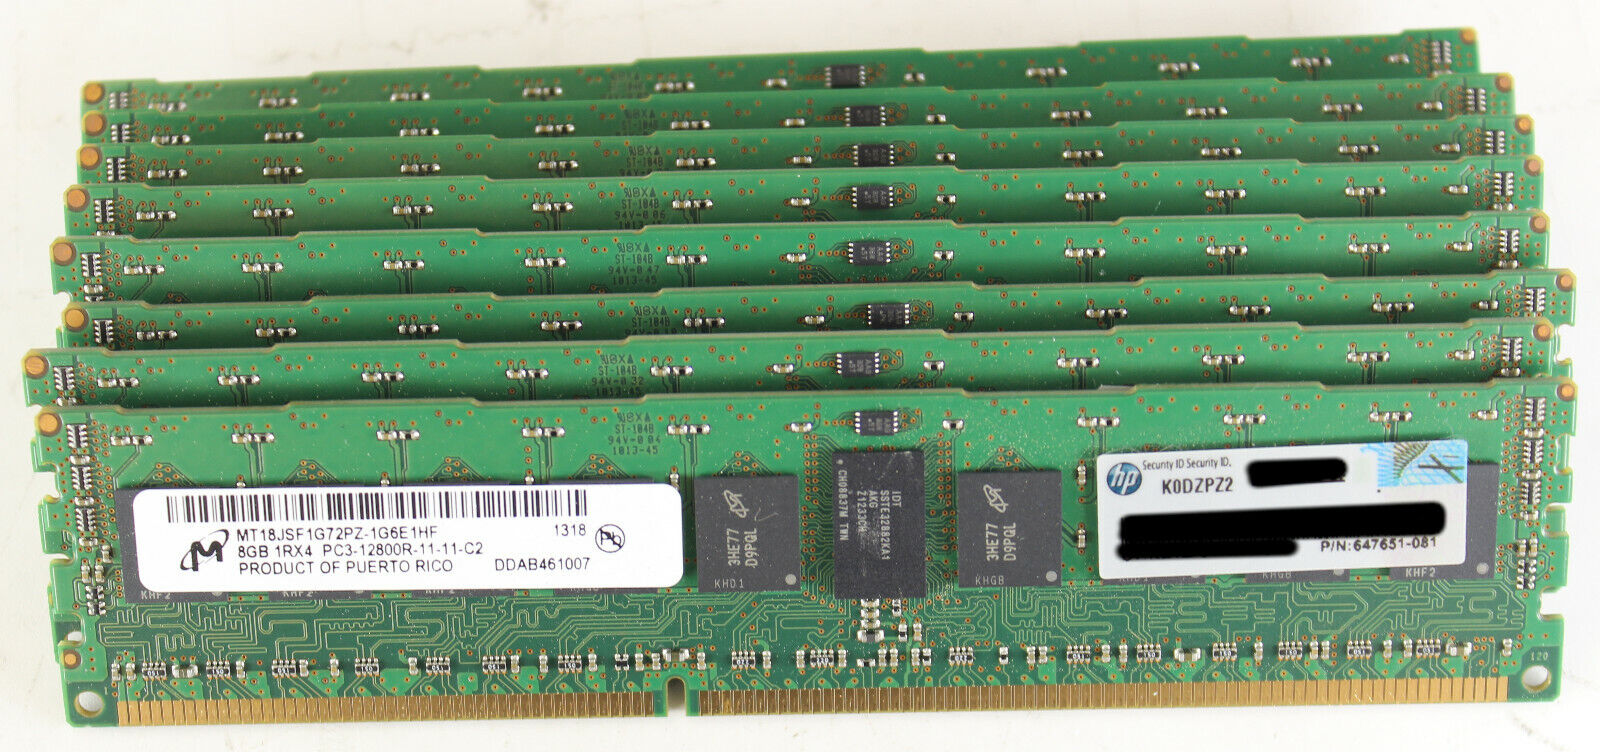 Lot of 8 HP Micron MT18JSF1G72PZ-1G6E1HF 647651-081 8GB 1Rx4 PC3-12800R ECC RAM